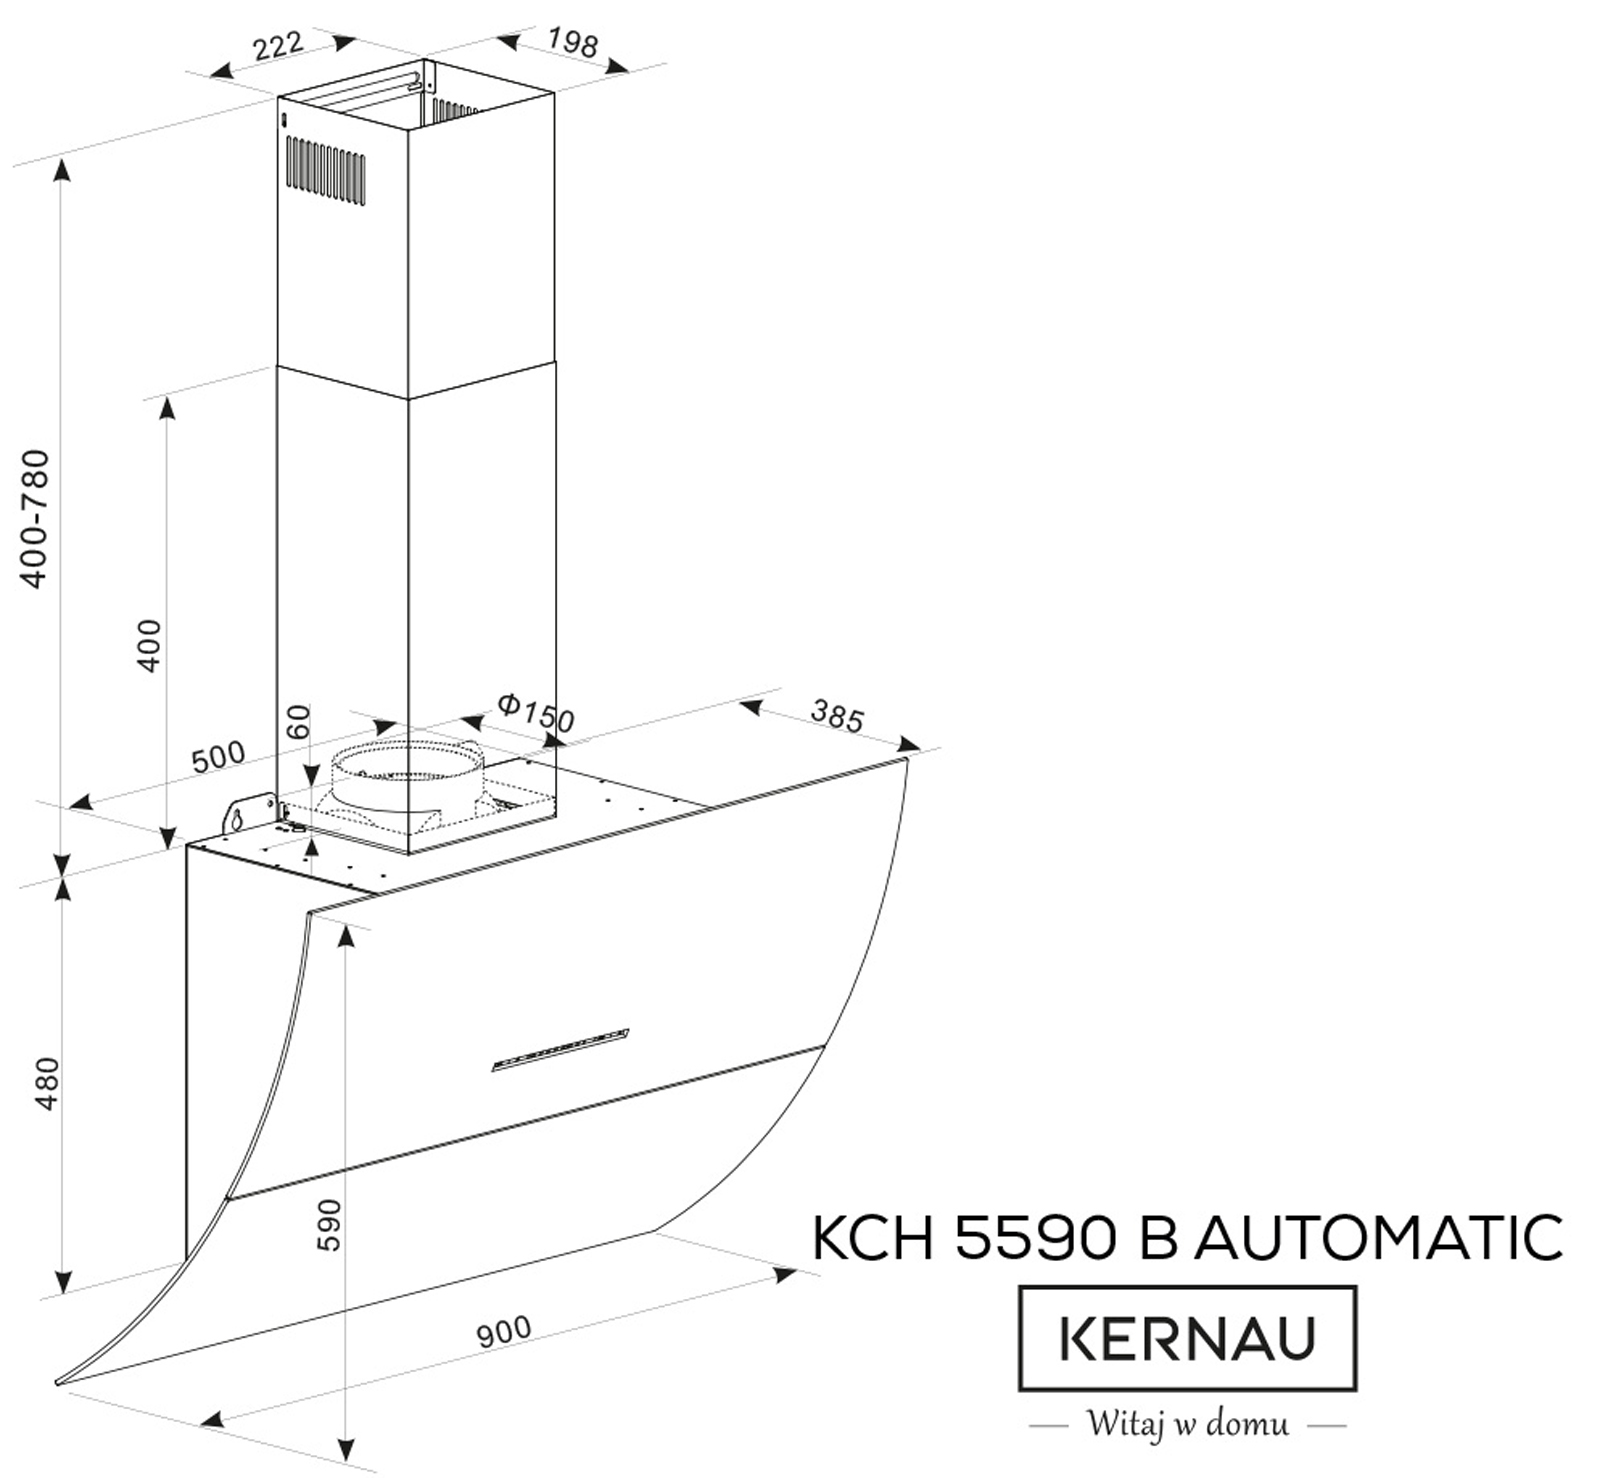 KCH 5590 B Automatic